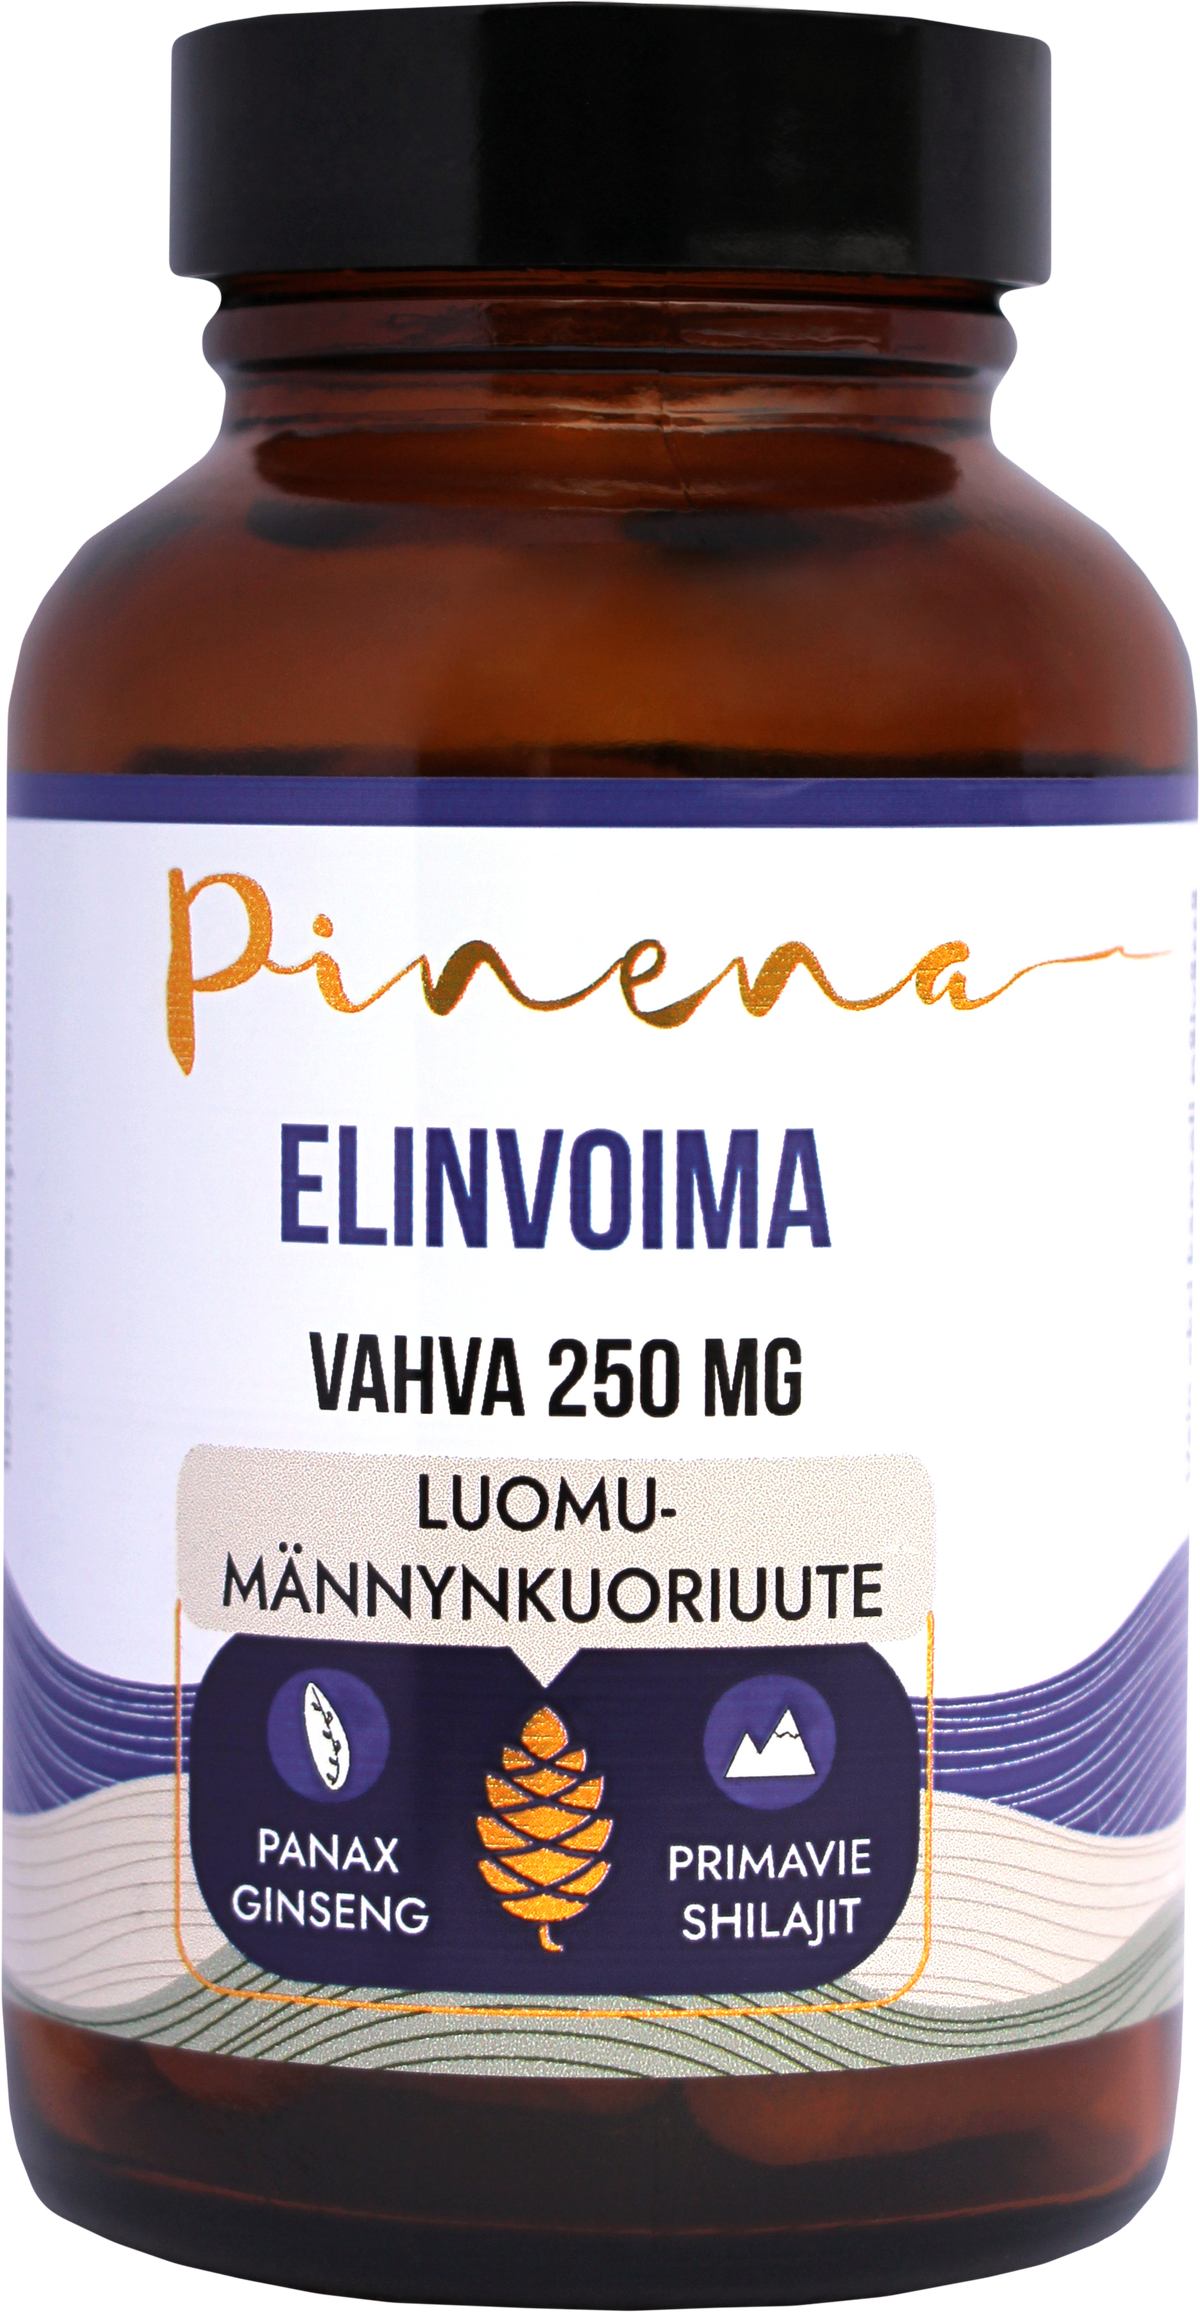 Pinena Elinvoima Vahva 250 mg 45 kaps.